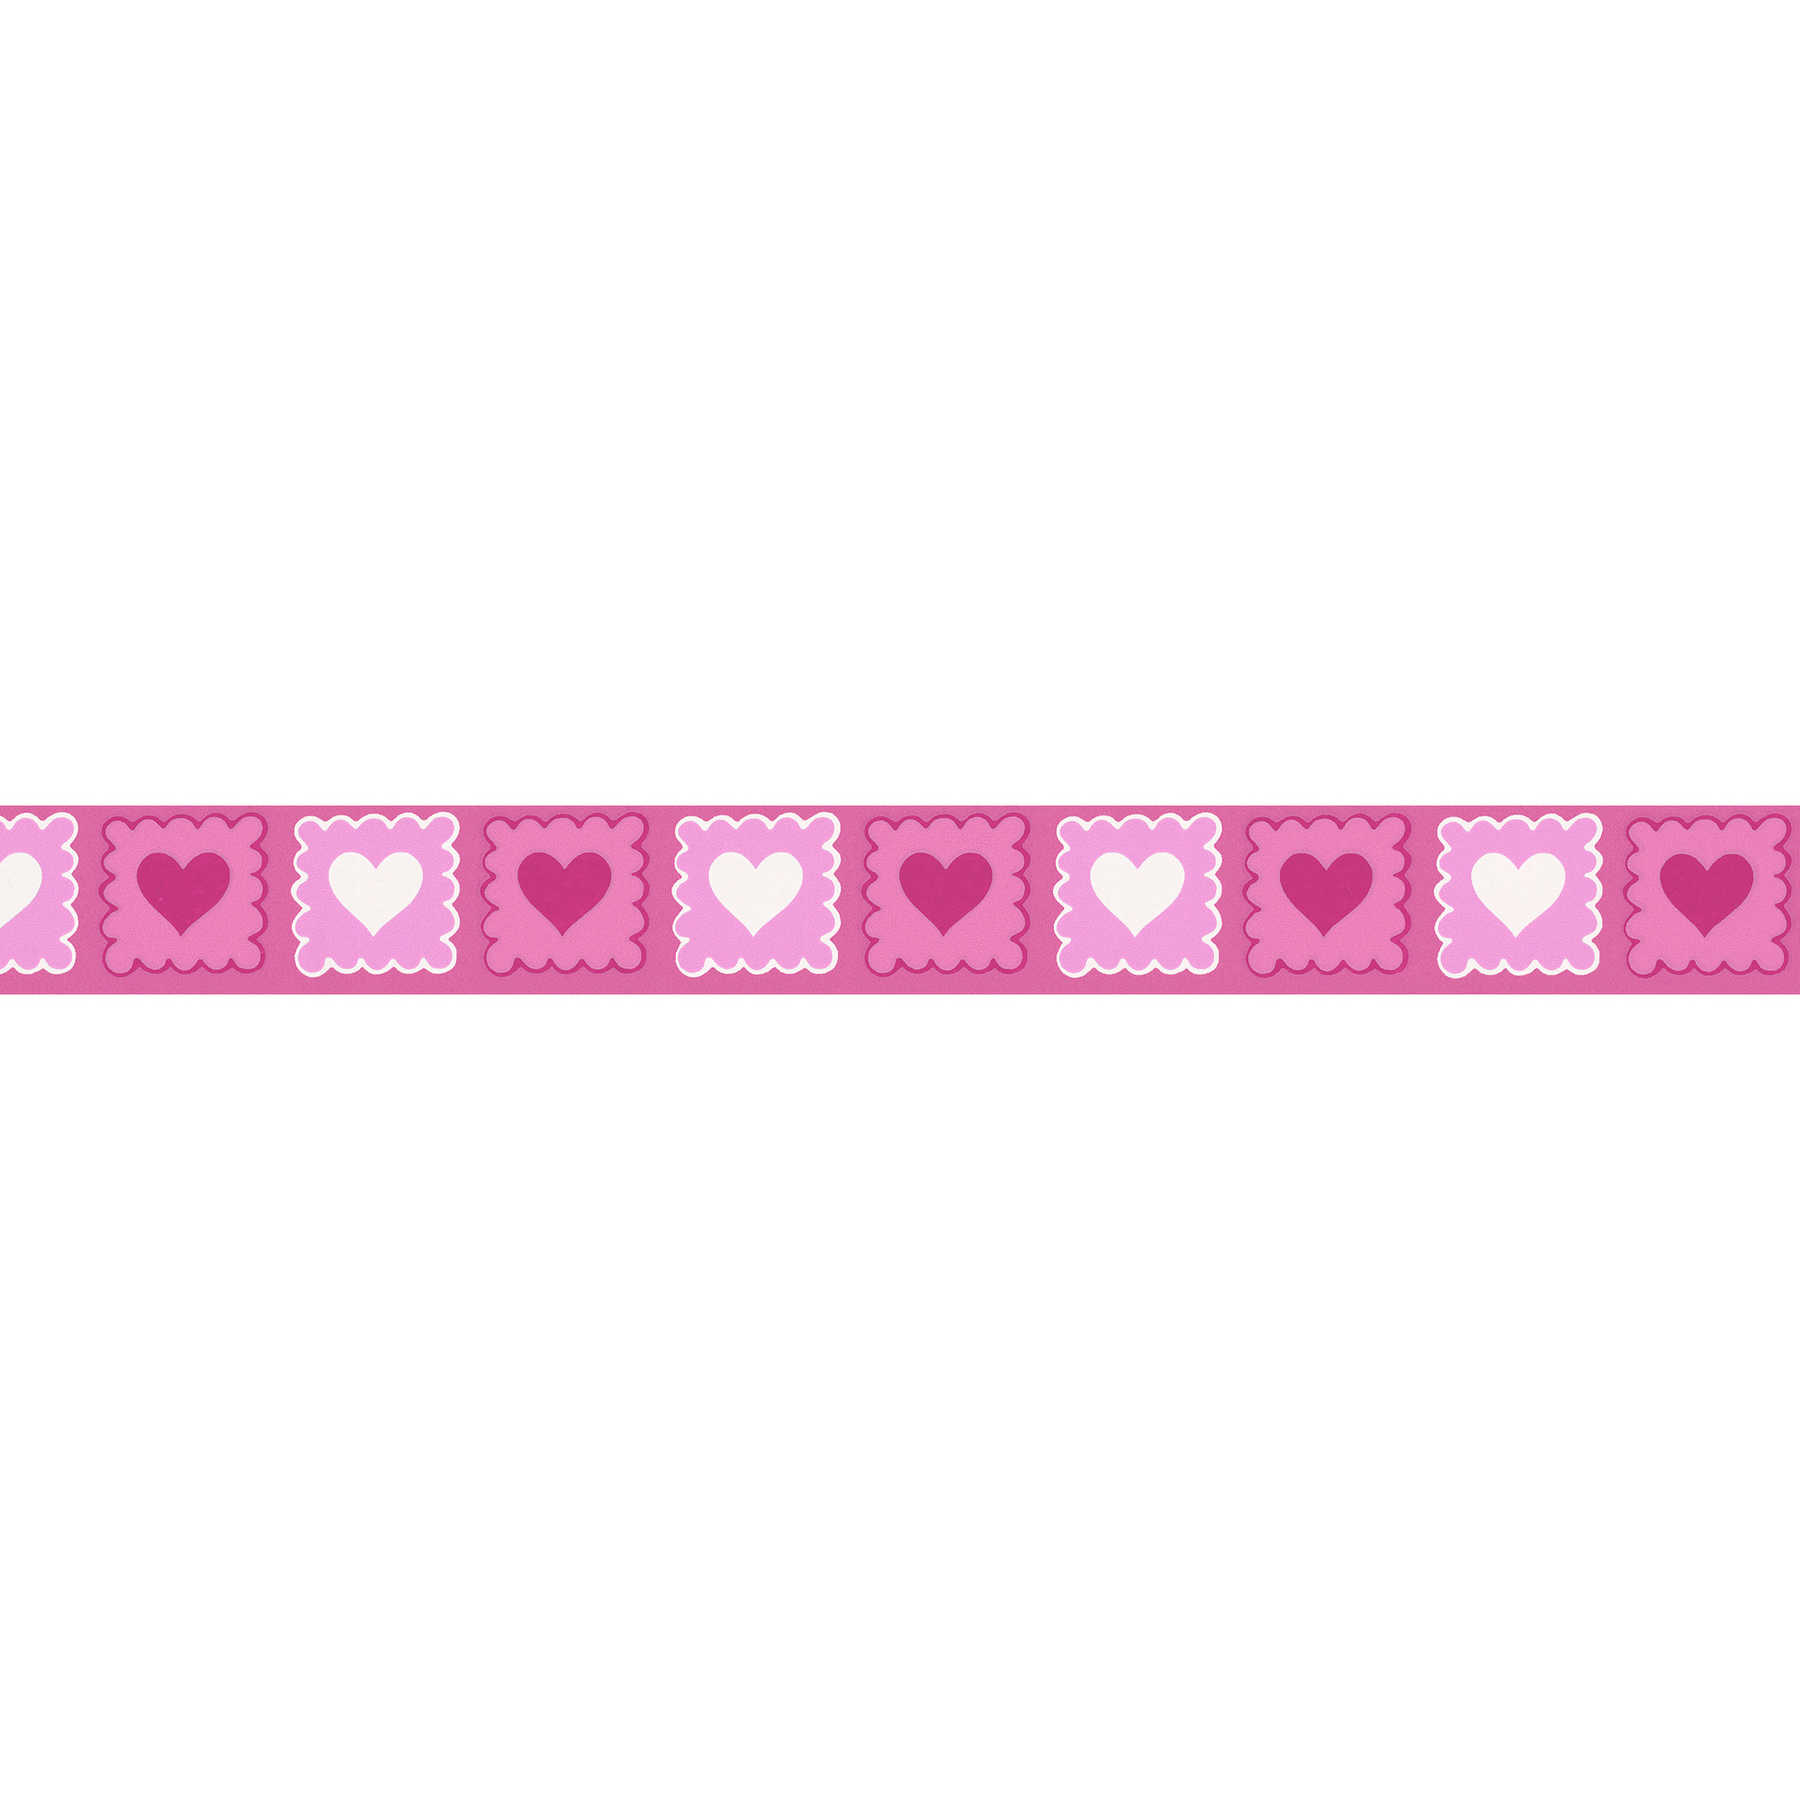 Pinke Borte mit Herz-Muster für Kinderzimmer – Rosa, Weiß, Bunt
